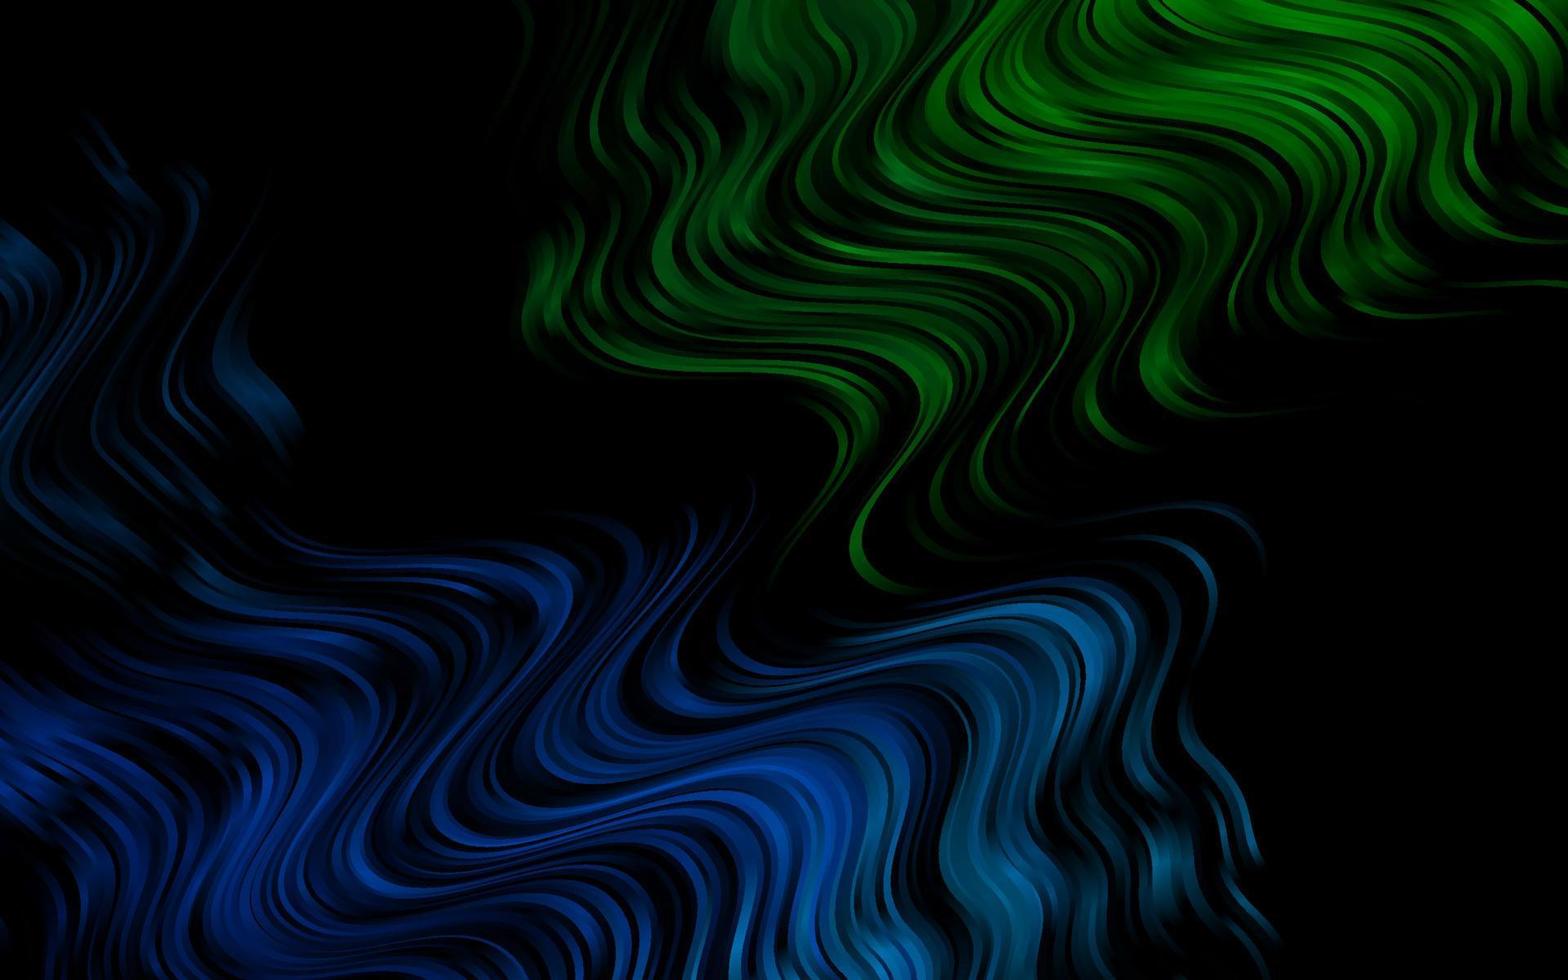 mörk blå, grön vektor mönster med flytande former.